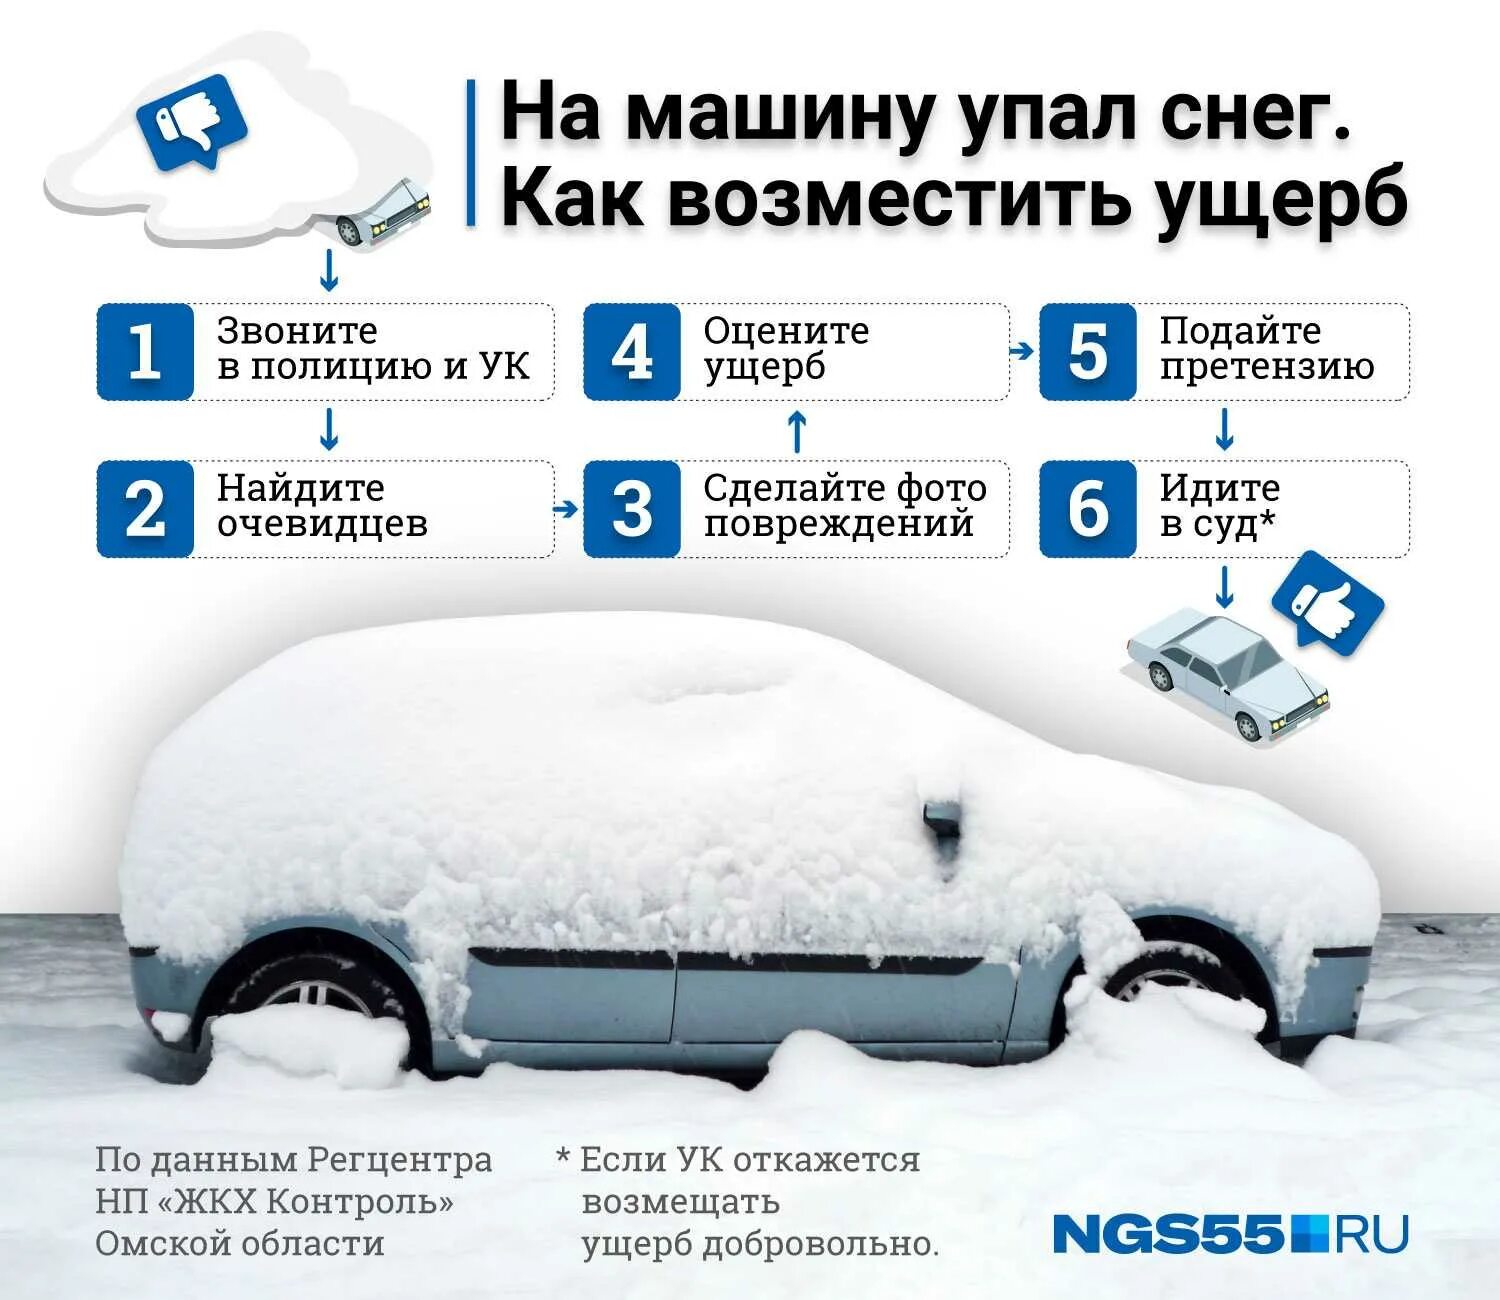 Снег упал на машину что делать. Что делать если упал снег на машину с крыши дома. Экспертиза падения снега на автомобиль пример.